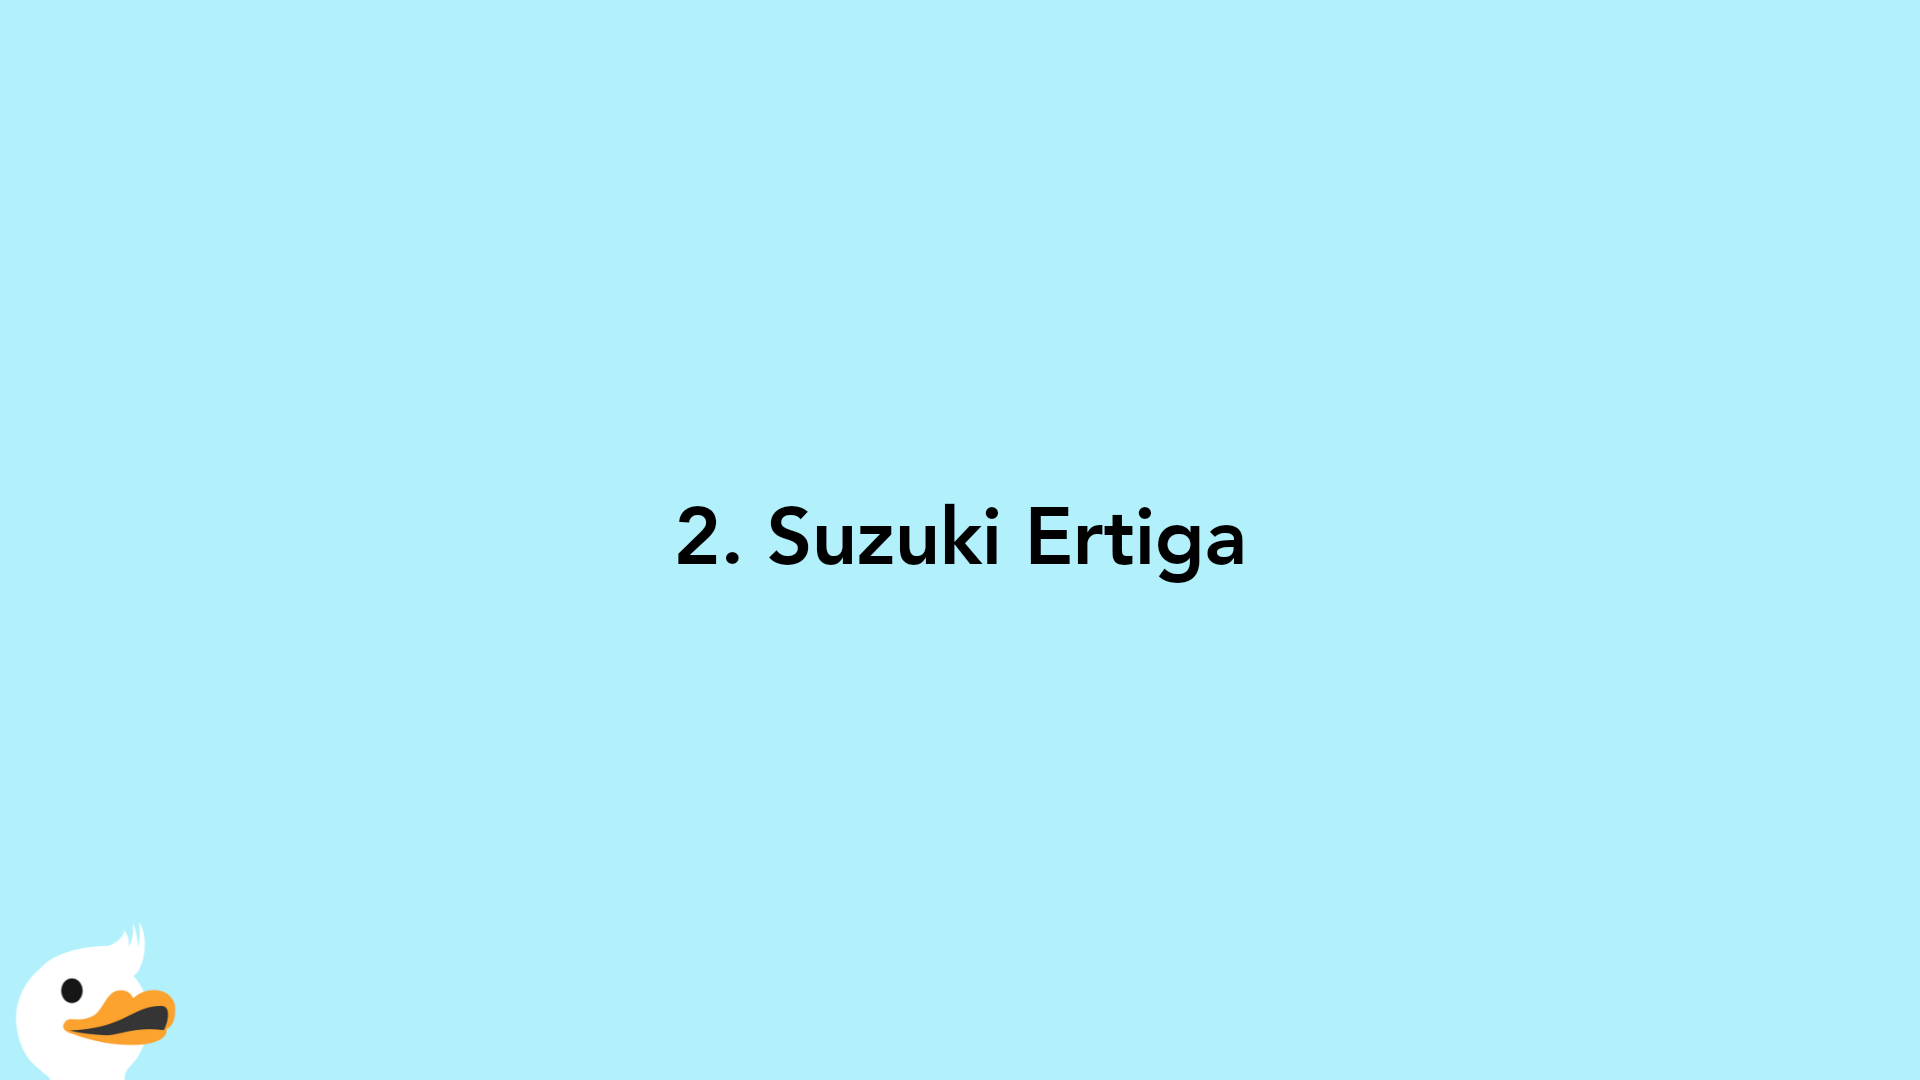 2. Suzuki Ertiga